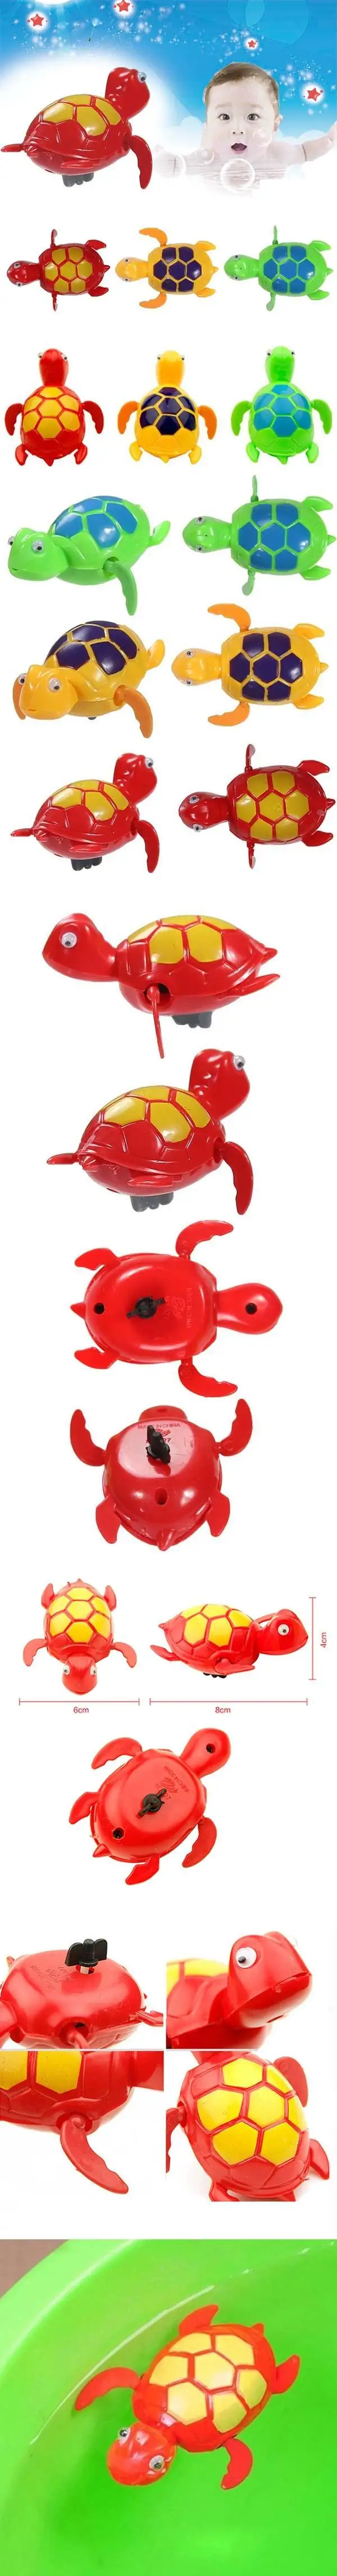 MrY Wind up плавающая черепаха животное игрушка для детей Детская ванна бассейн время Новинка